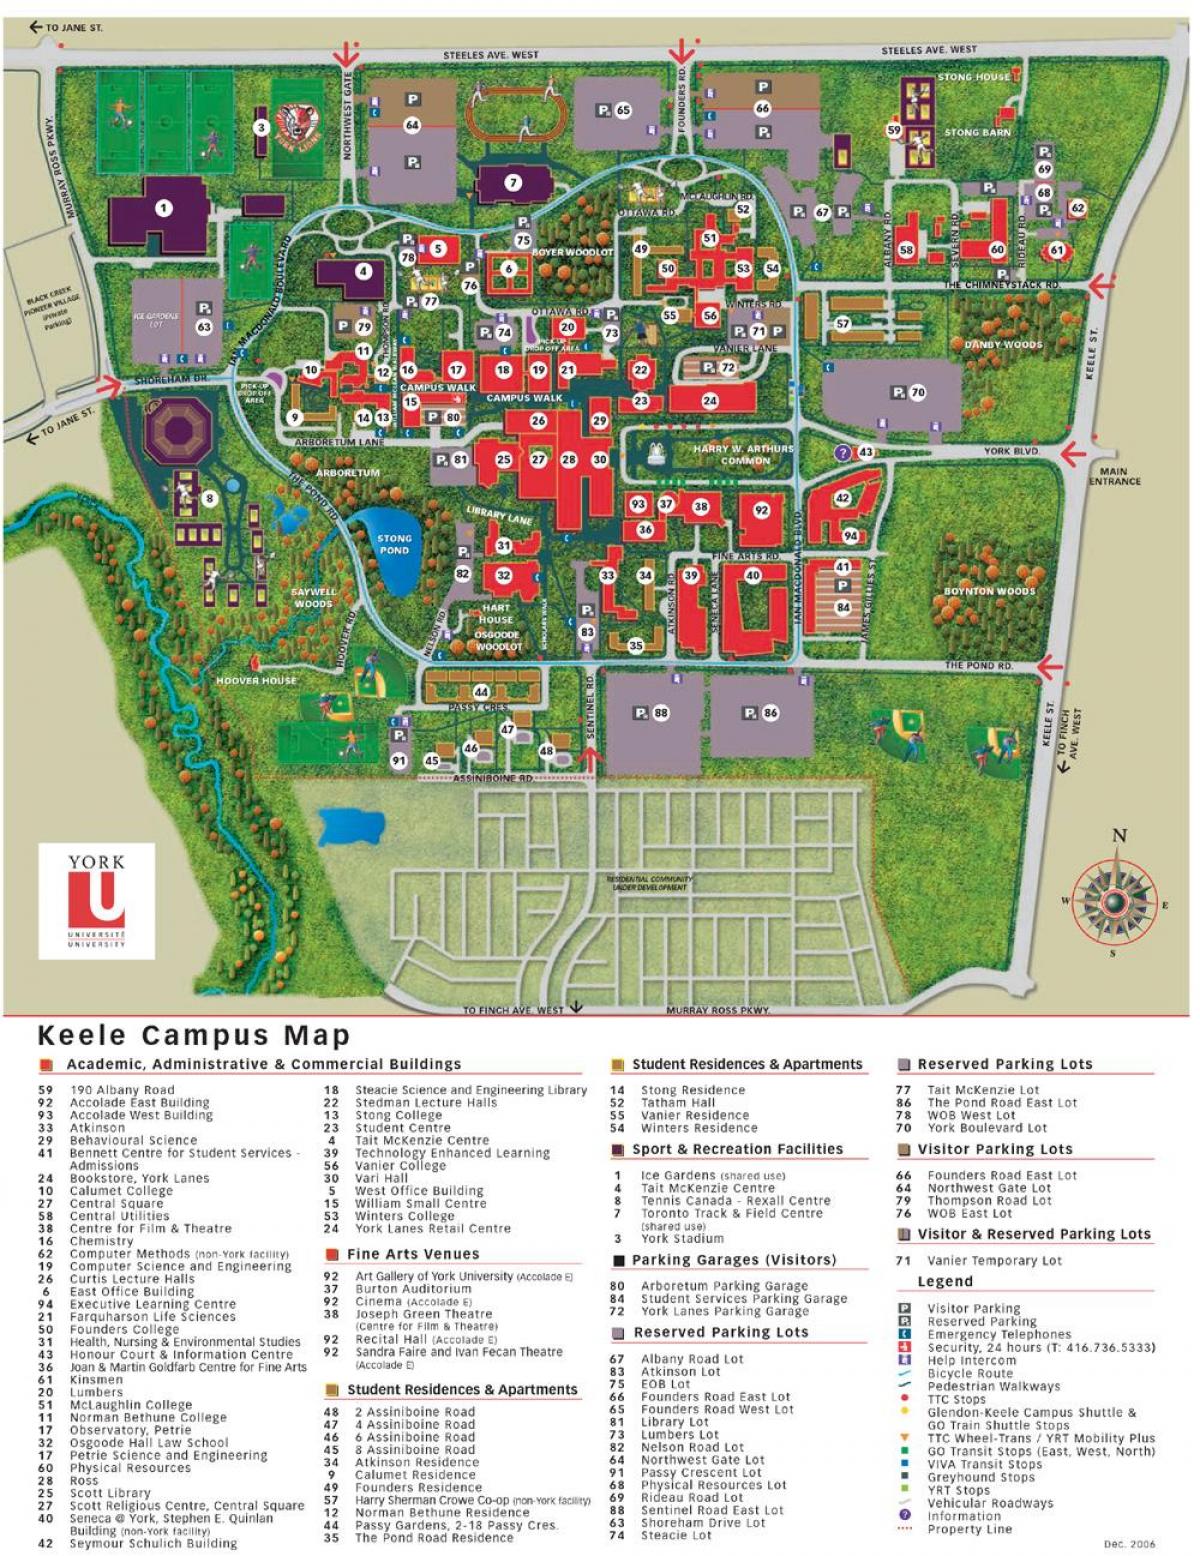 York haritası keele Üniversitesi kampüs